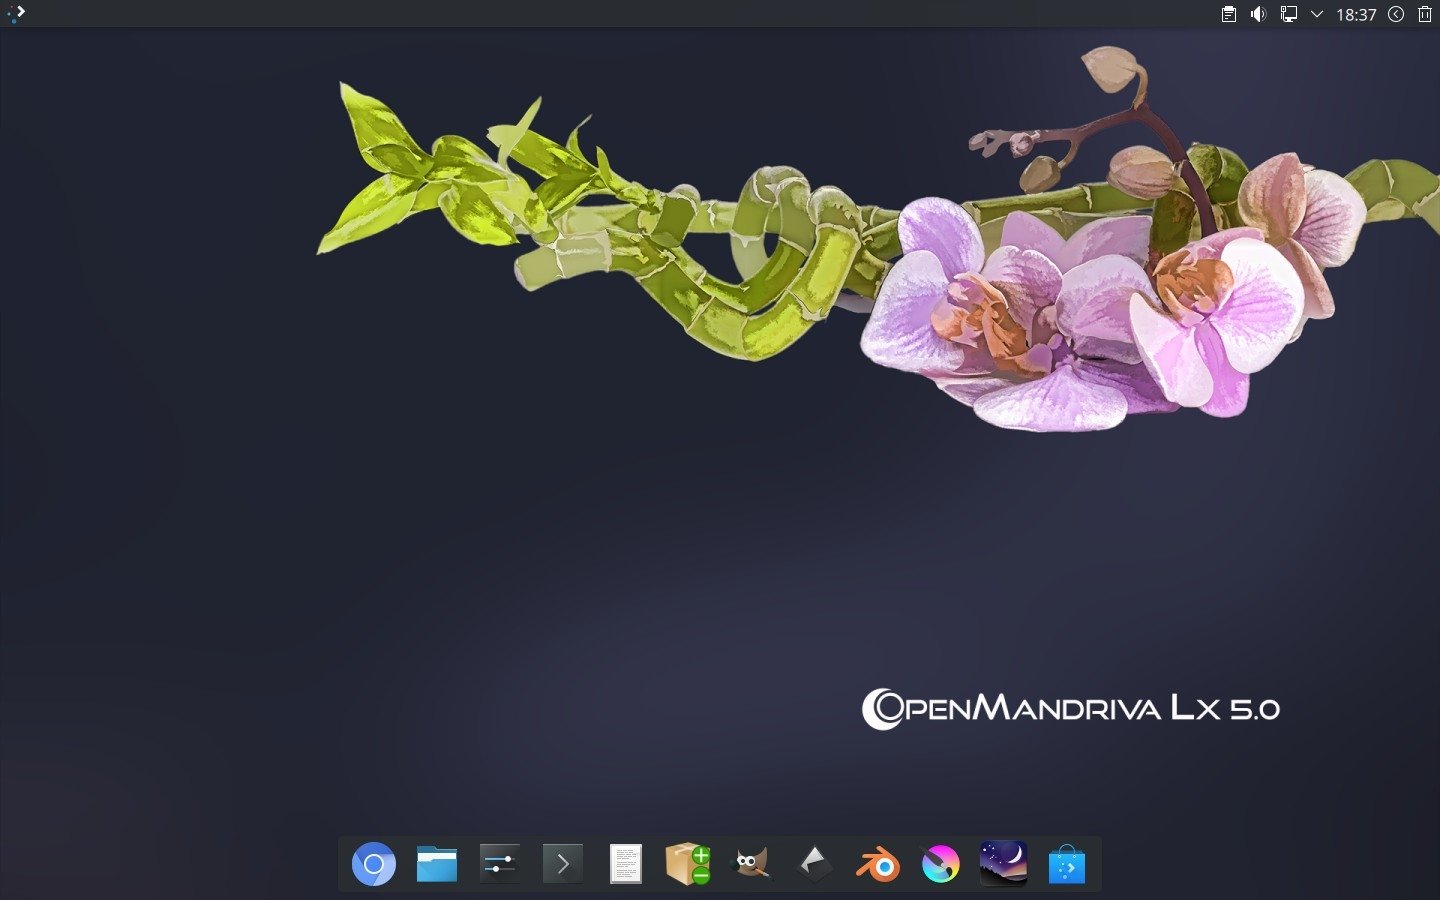 OpenMandriva Lx 5.0 chega com várias melhorias e suporte a KDE Plasma 5.27